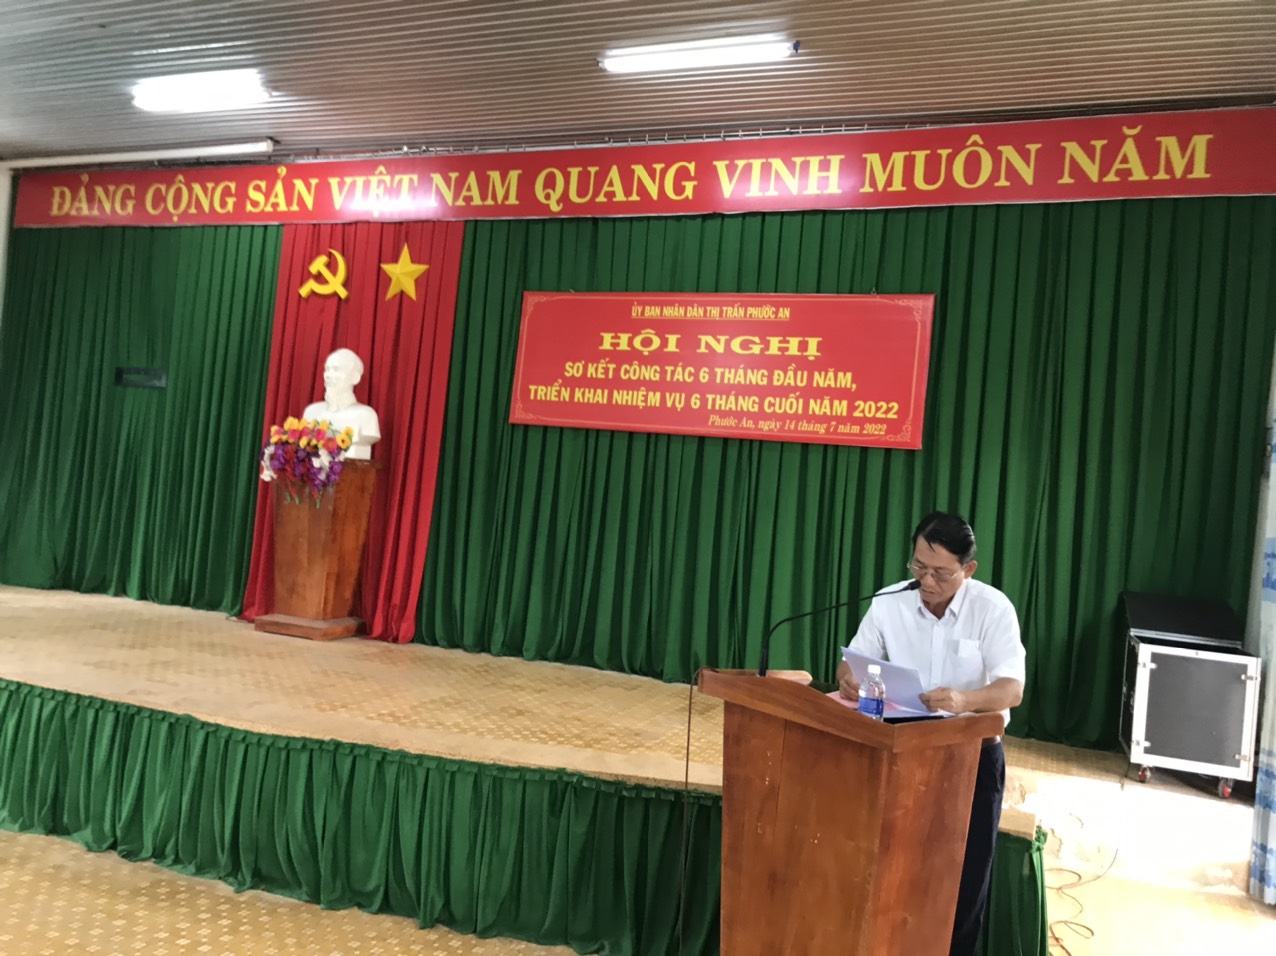 Uỷ Ban Nhân Dân Thị Trấn Phước An tổ chức Hội nghị sơ kết 6 tháng đầu năm và triển khai nhiệm vụ 6 tháng cuối năm 2022